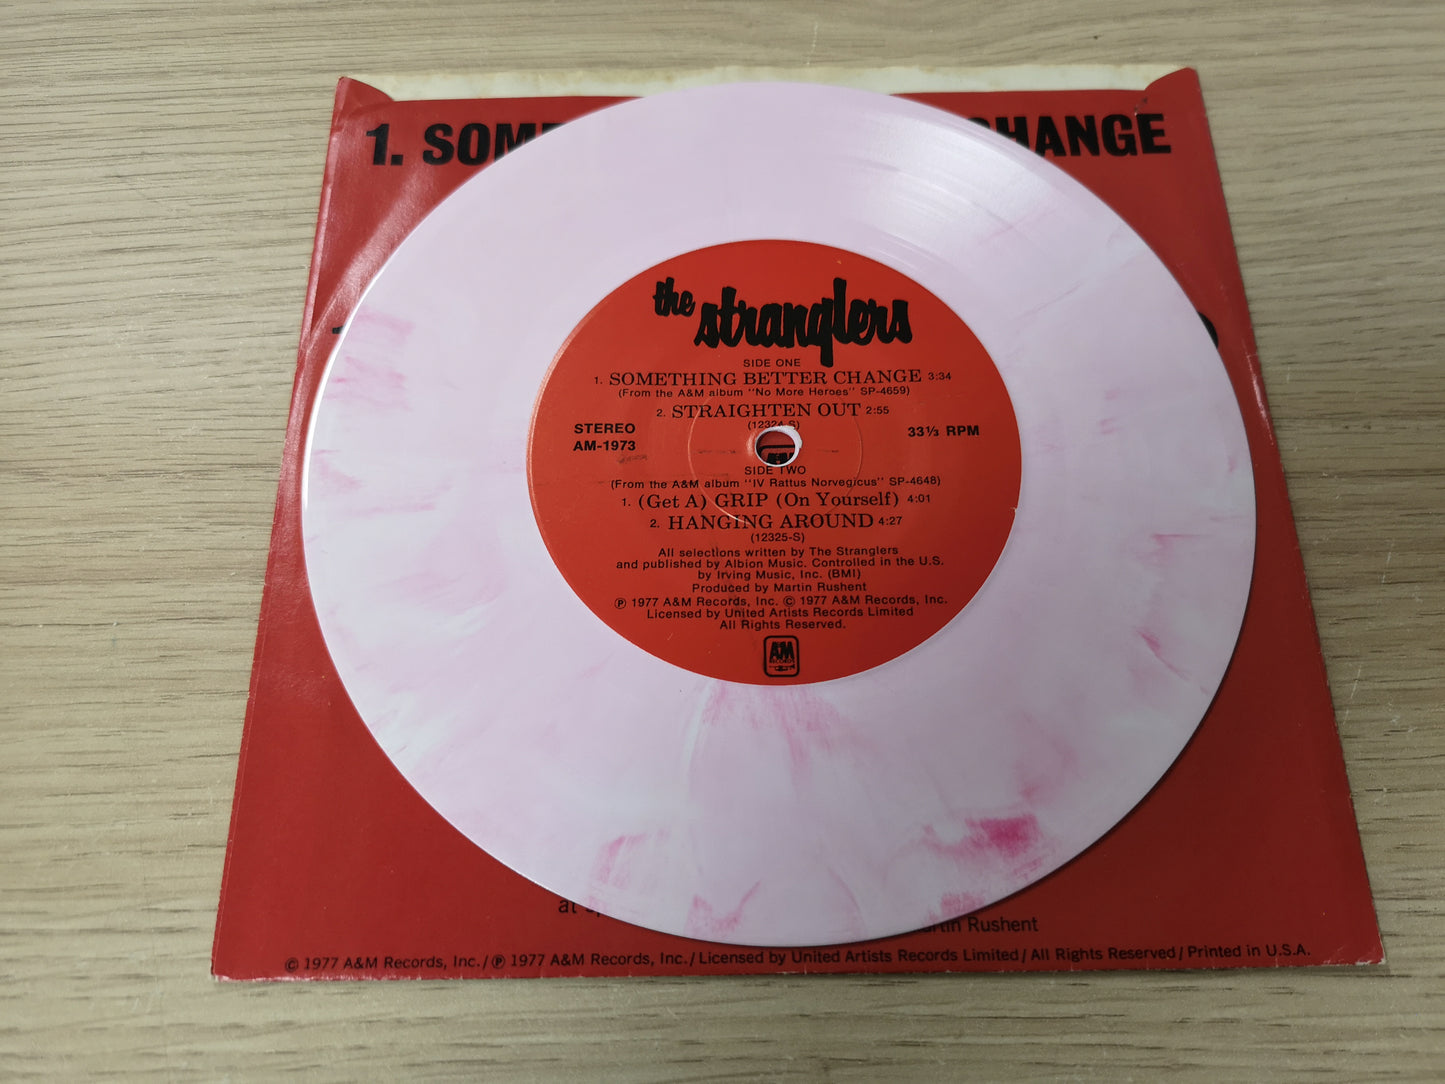 Stranglers "Something Better Change" Orig US EP 1977 Pink Vinyl VG++/M-